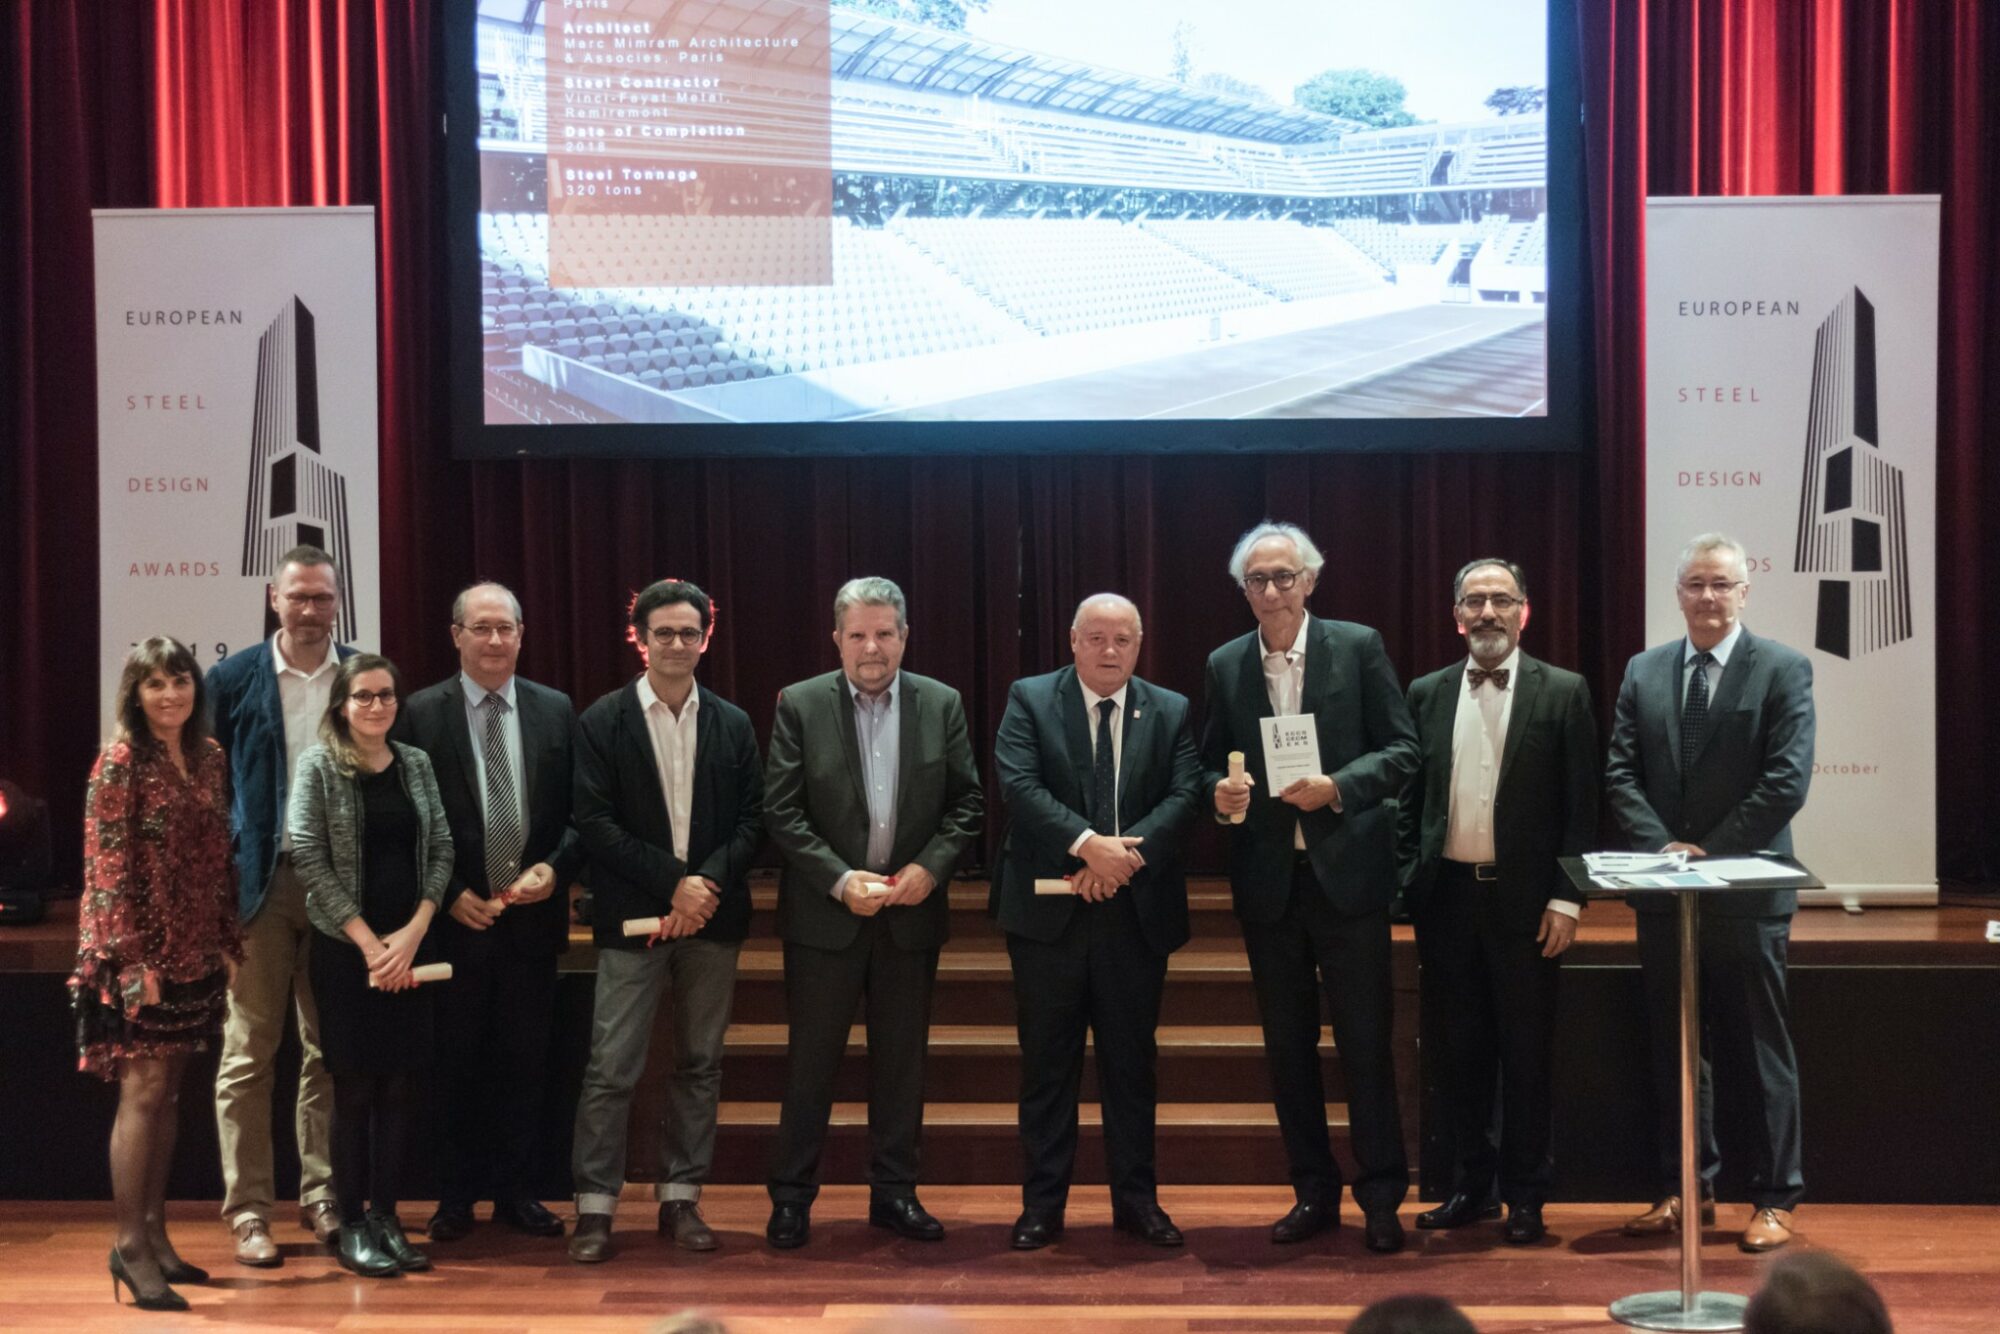 De FFT toegekend voor de realisatie van Court Simonne-Mathieu tijdens de ceremonie van de "European Steel Design Awards 2019" in Brussel